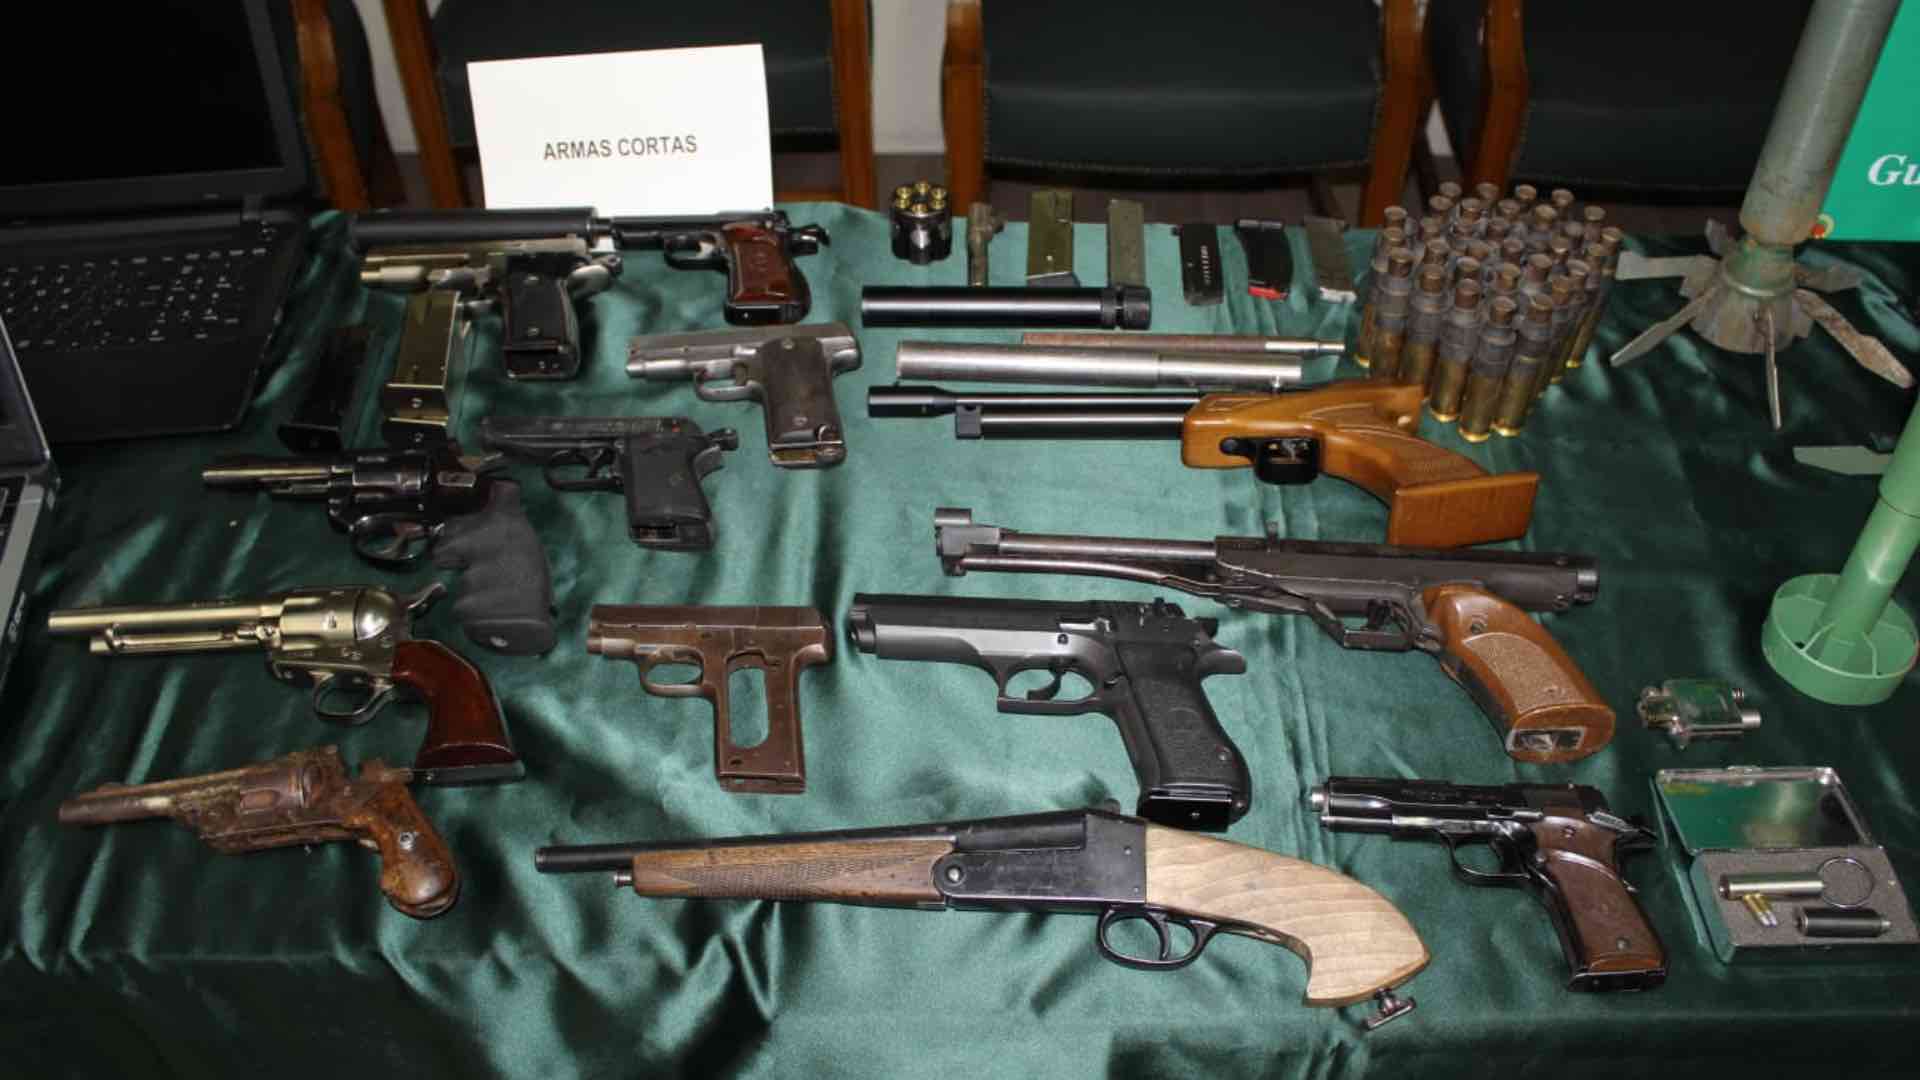 La Guardia Civil detiene a una persona por tener un arsenal de armas en su vivienda en Zaragoza